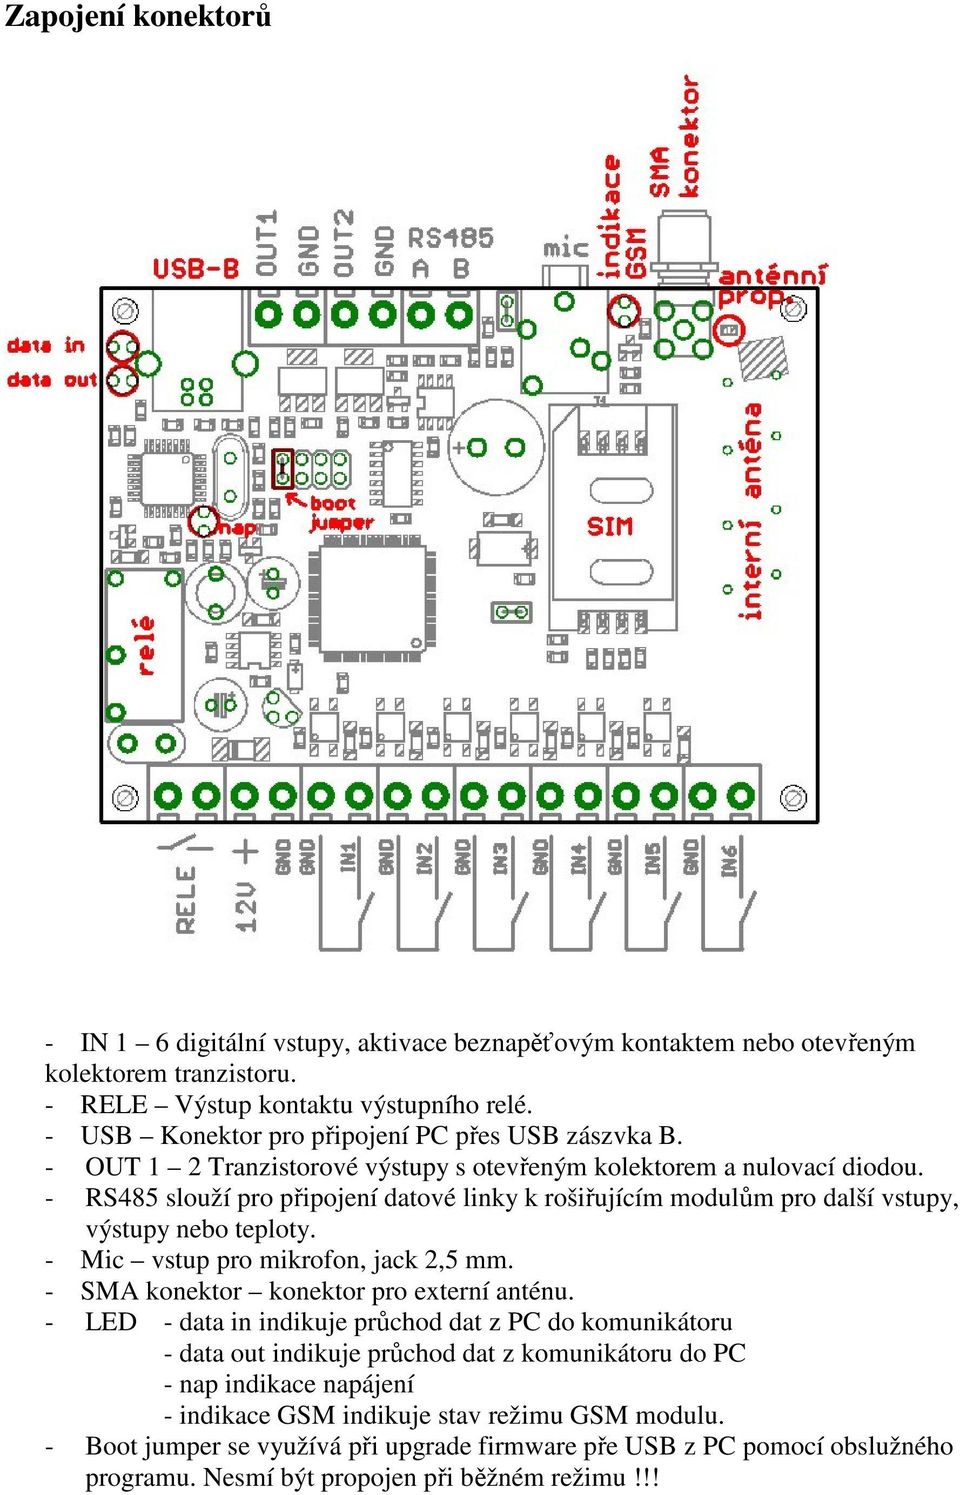 - RS485 slouží pro připojení datové linky k rošiřujícím modulům pro další vstupy, výstupy nebo teploty. - Mic vstup pro mikrofon, jack 2,5 mm. - SMA konektor konektor pro externí anténu.